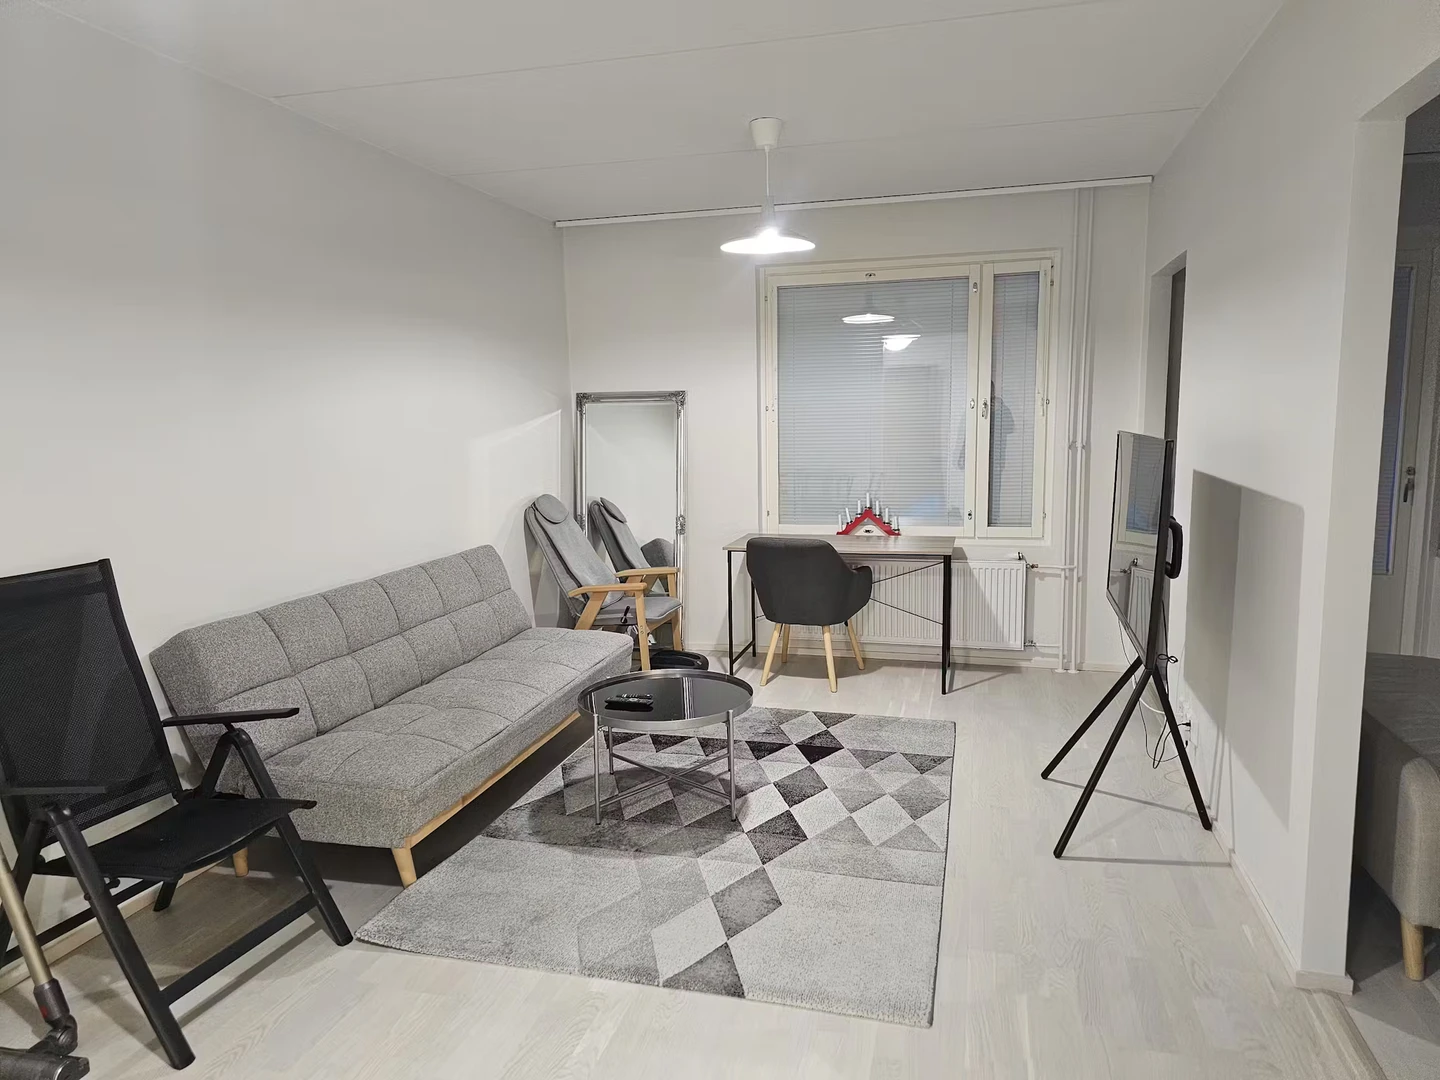 W pełni umeblowane mieszkanie w Espoo